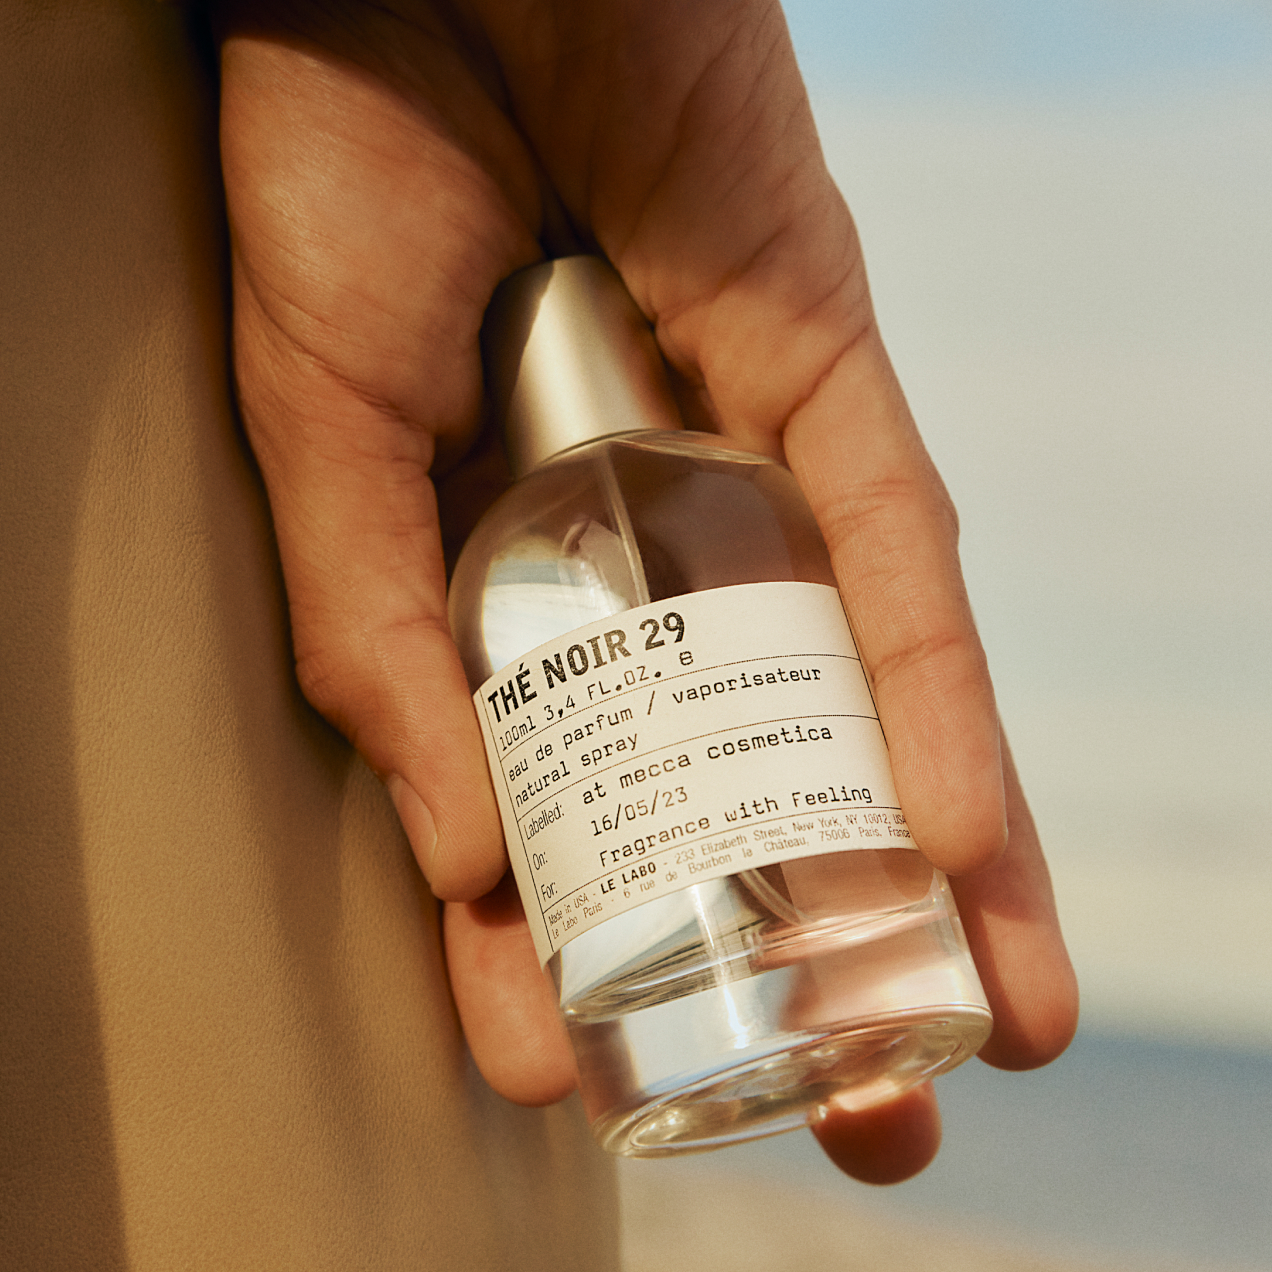 Authentic Louis Vuitton EDP Perfume(NOUVEAU MONDE) Sample Spray 2 ml/.06 Oz